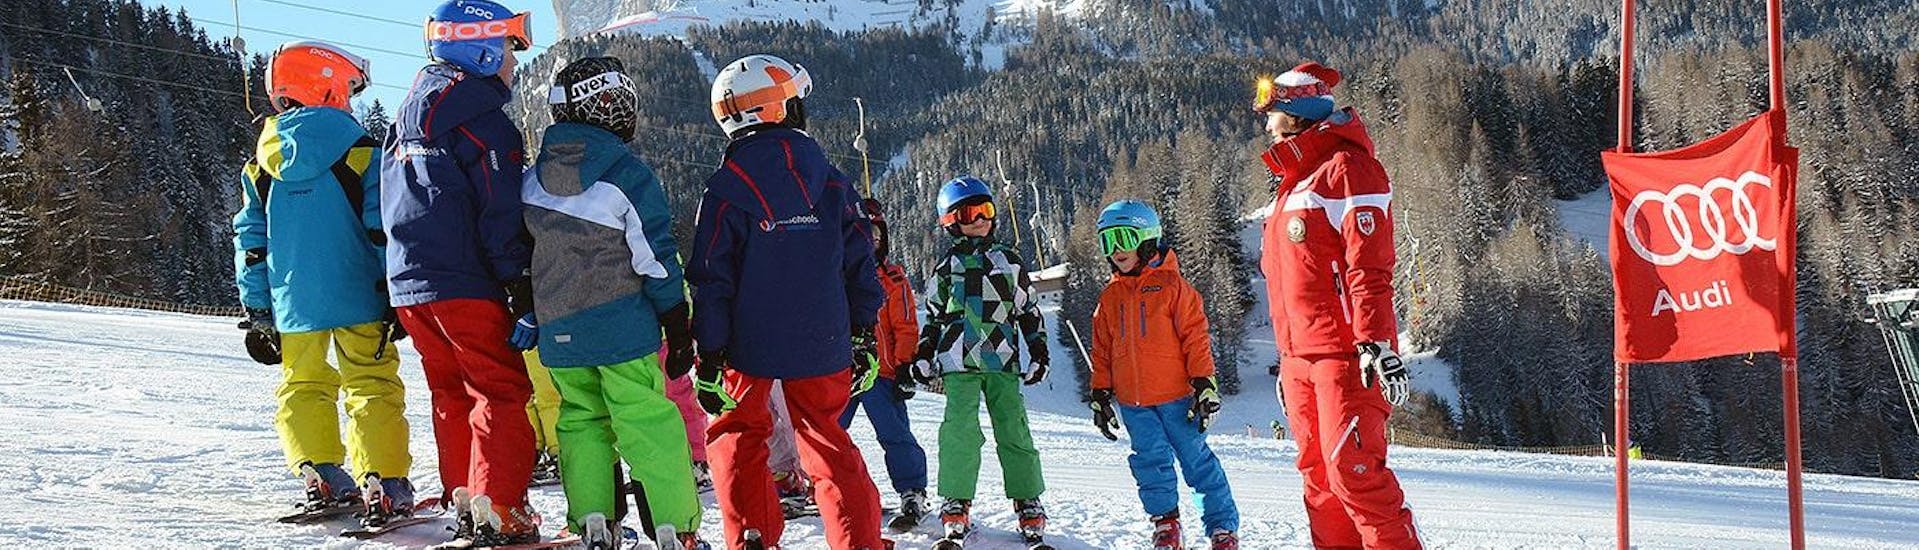 Der Skilehrer gibt den jungen Teilnehmern die letzten Tipps vor dem Rennen. Diese Kinderskikurse für Fortgeschrittene sind ideal in Wolkenstein.